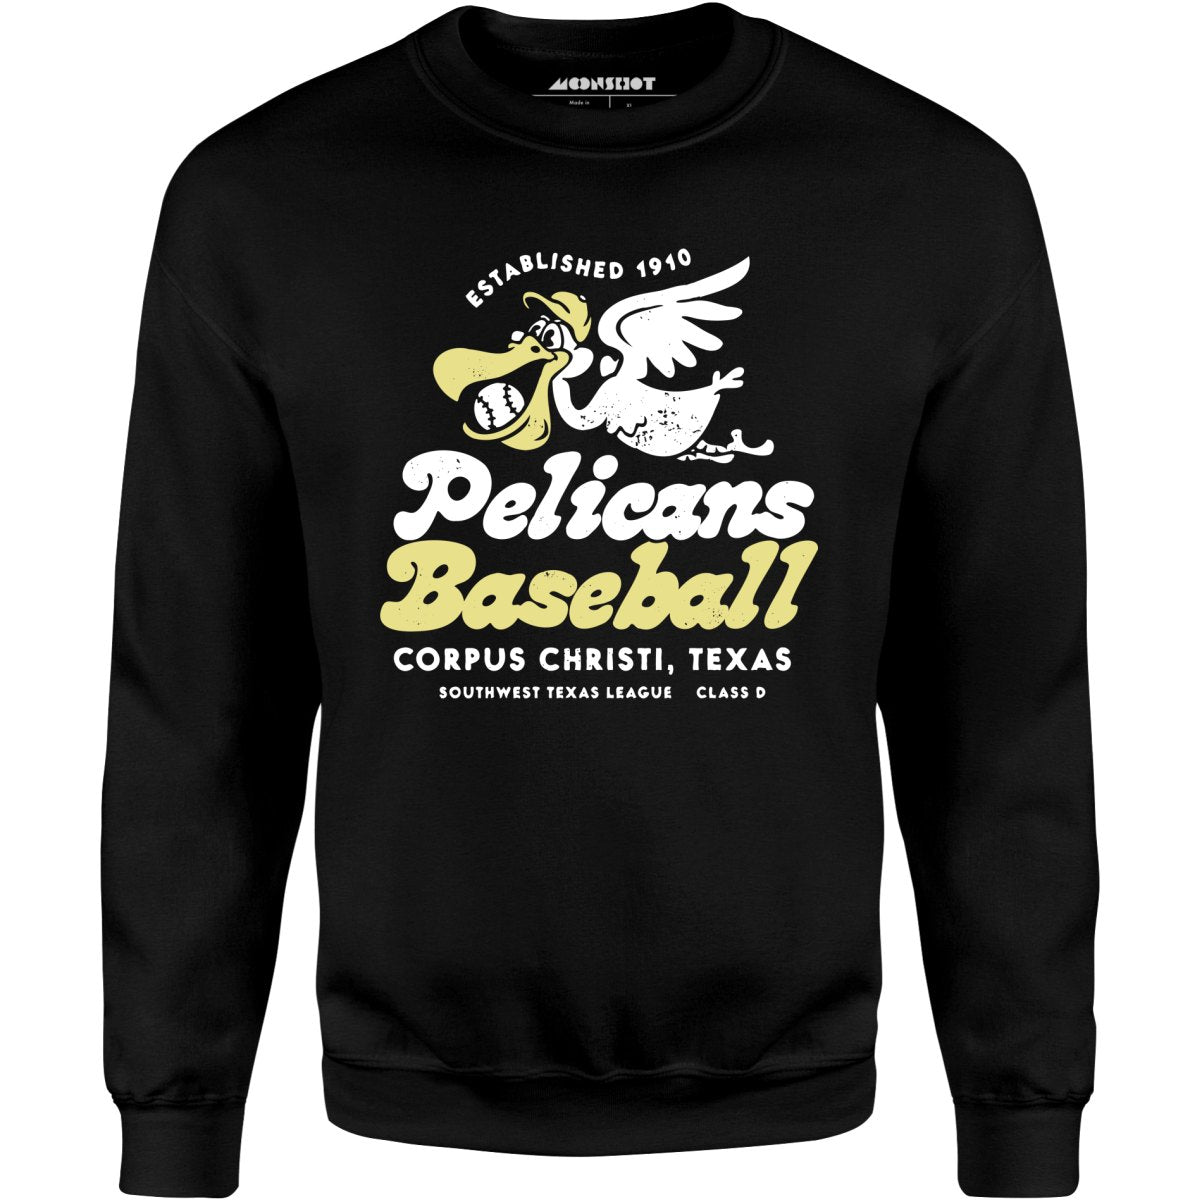 Corpus Christi Pelicans - Texas - Vintage Defunct Baseball Teams - Unisex Sweatshirt